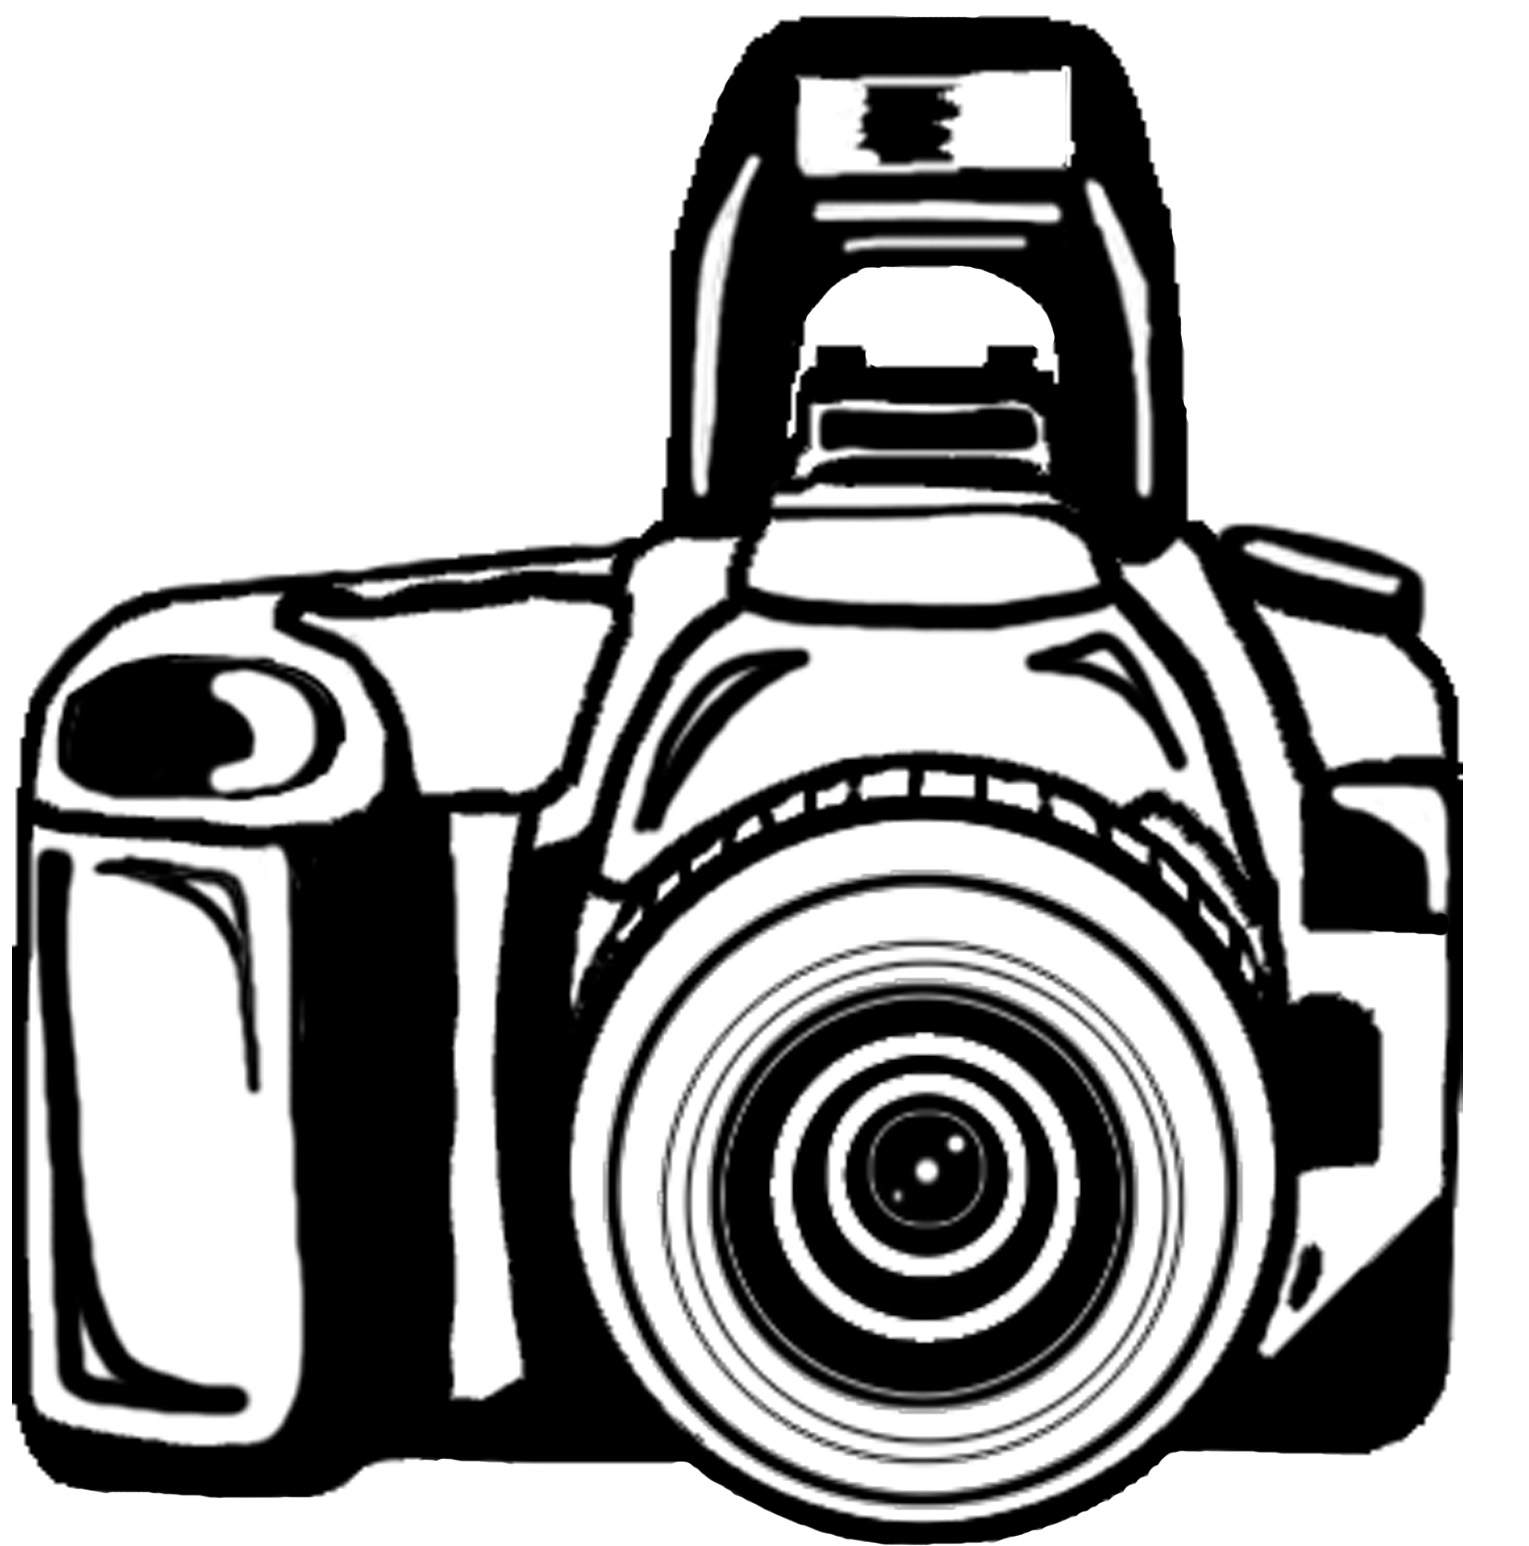 Nikon clipart #14, Download drawings